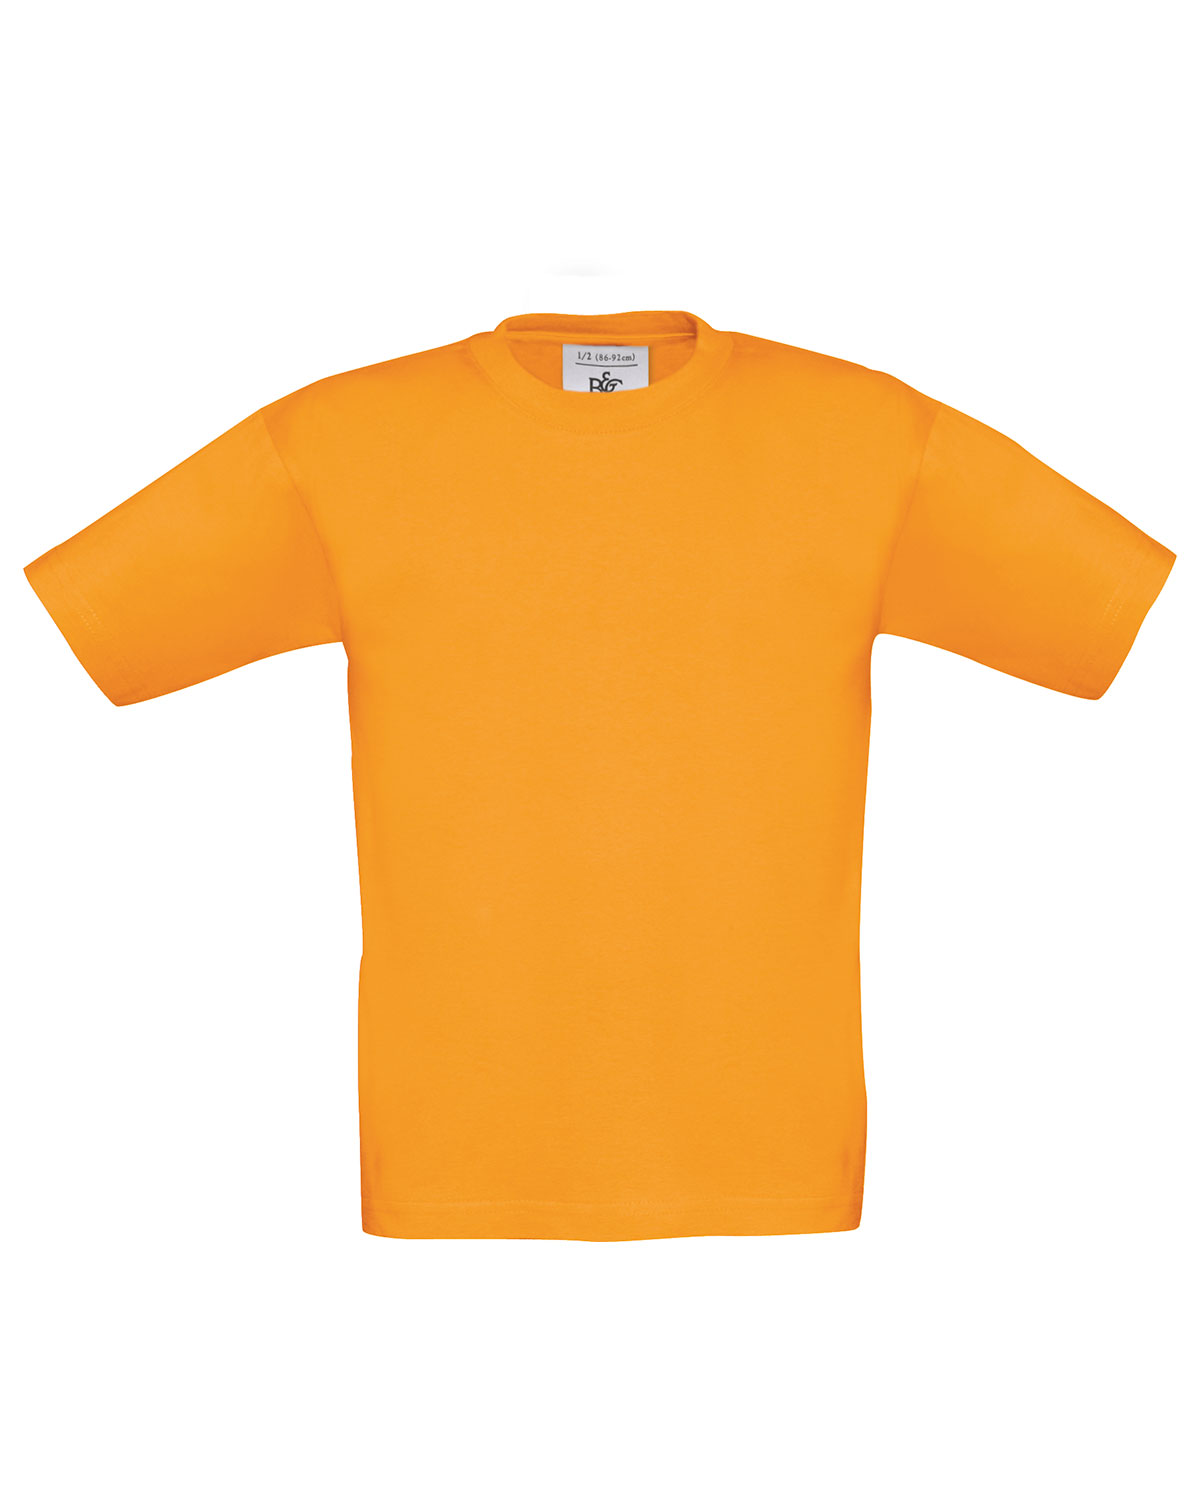 T-Shirt Exact 190 /kids Orange 152/164